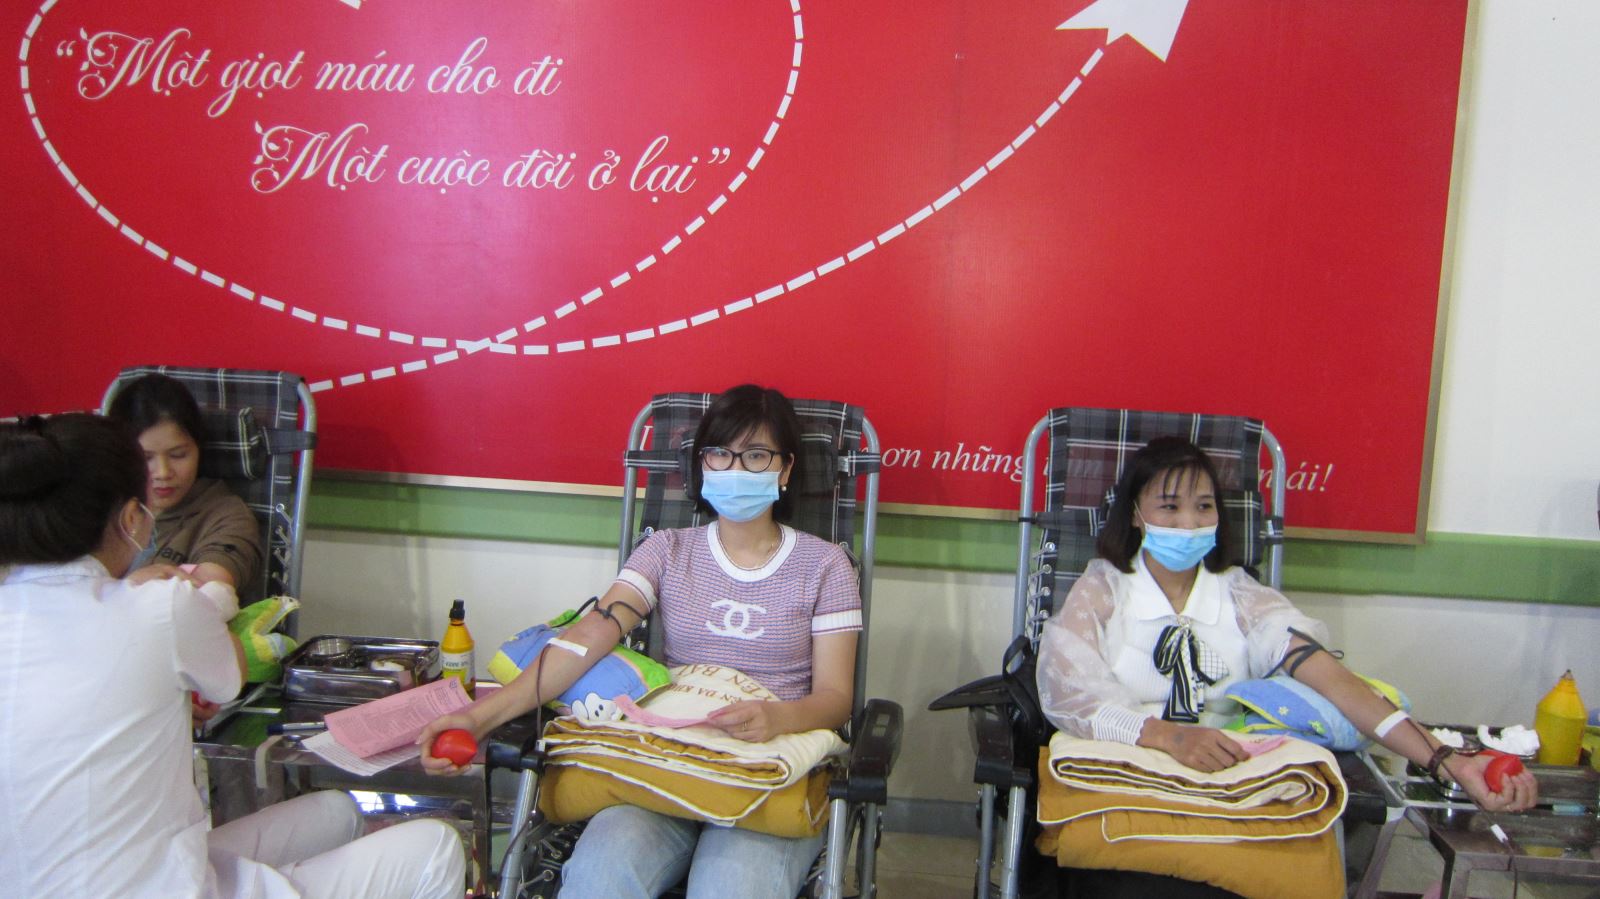 Cán bộ y tế thành phố Yên Bái tham gia Chương trình hiến máu tình nguyện Lễ hội Xuân hồng năm 2021 – Kỷ niệm Ngày Thầy thuốc Việt Nam 27/2